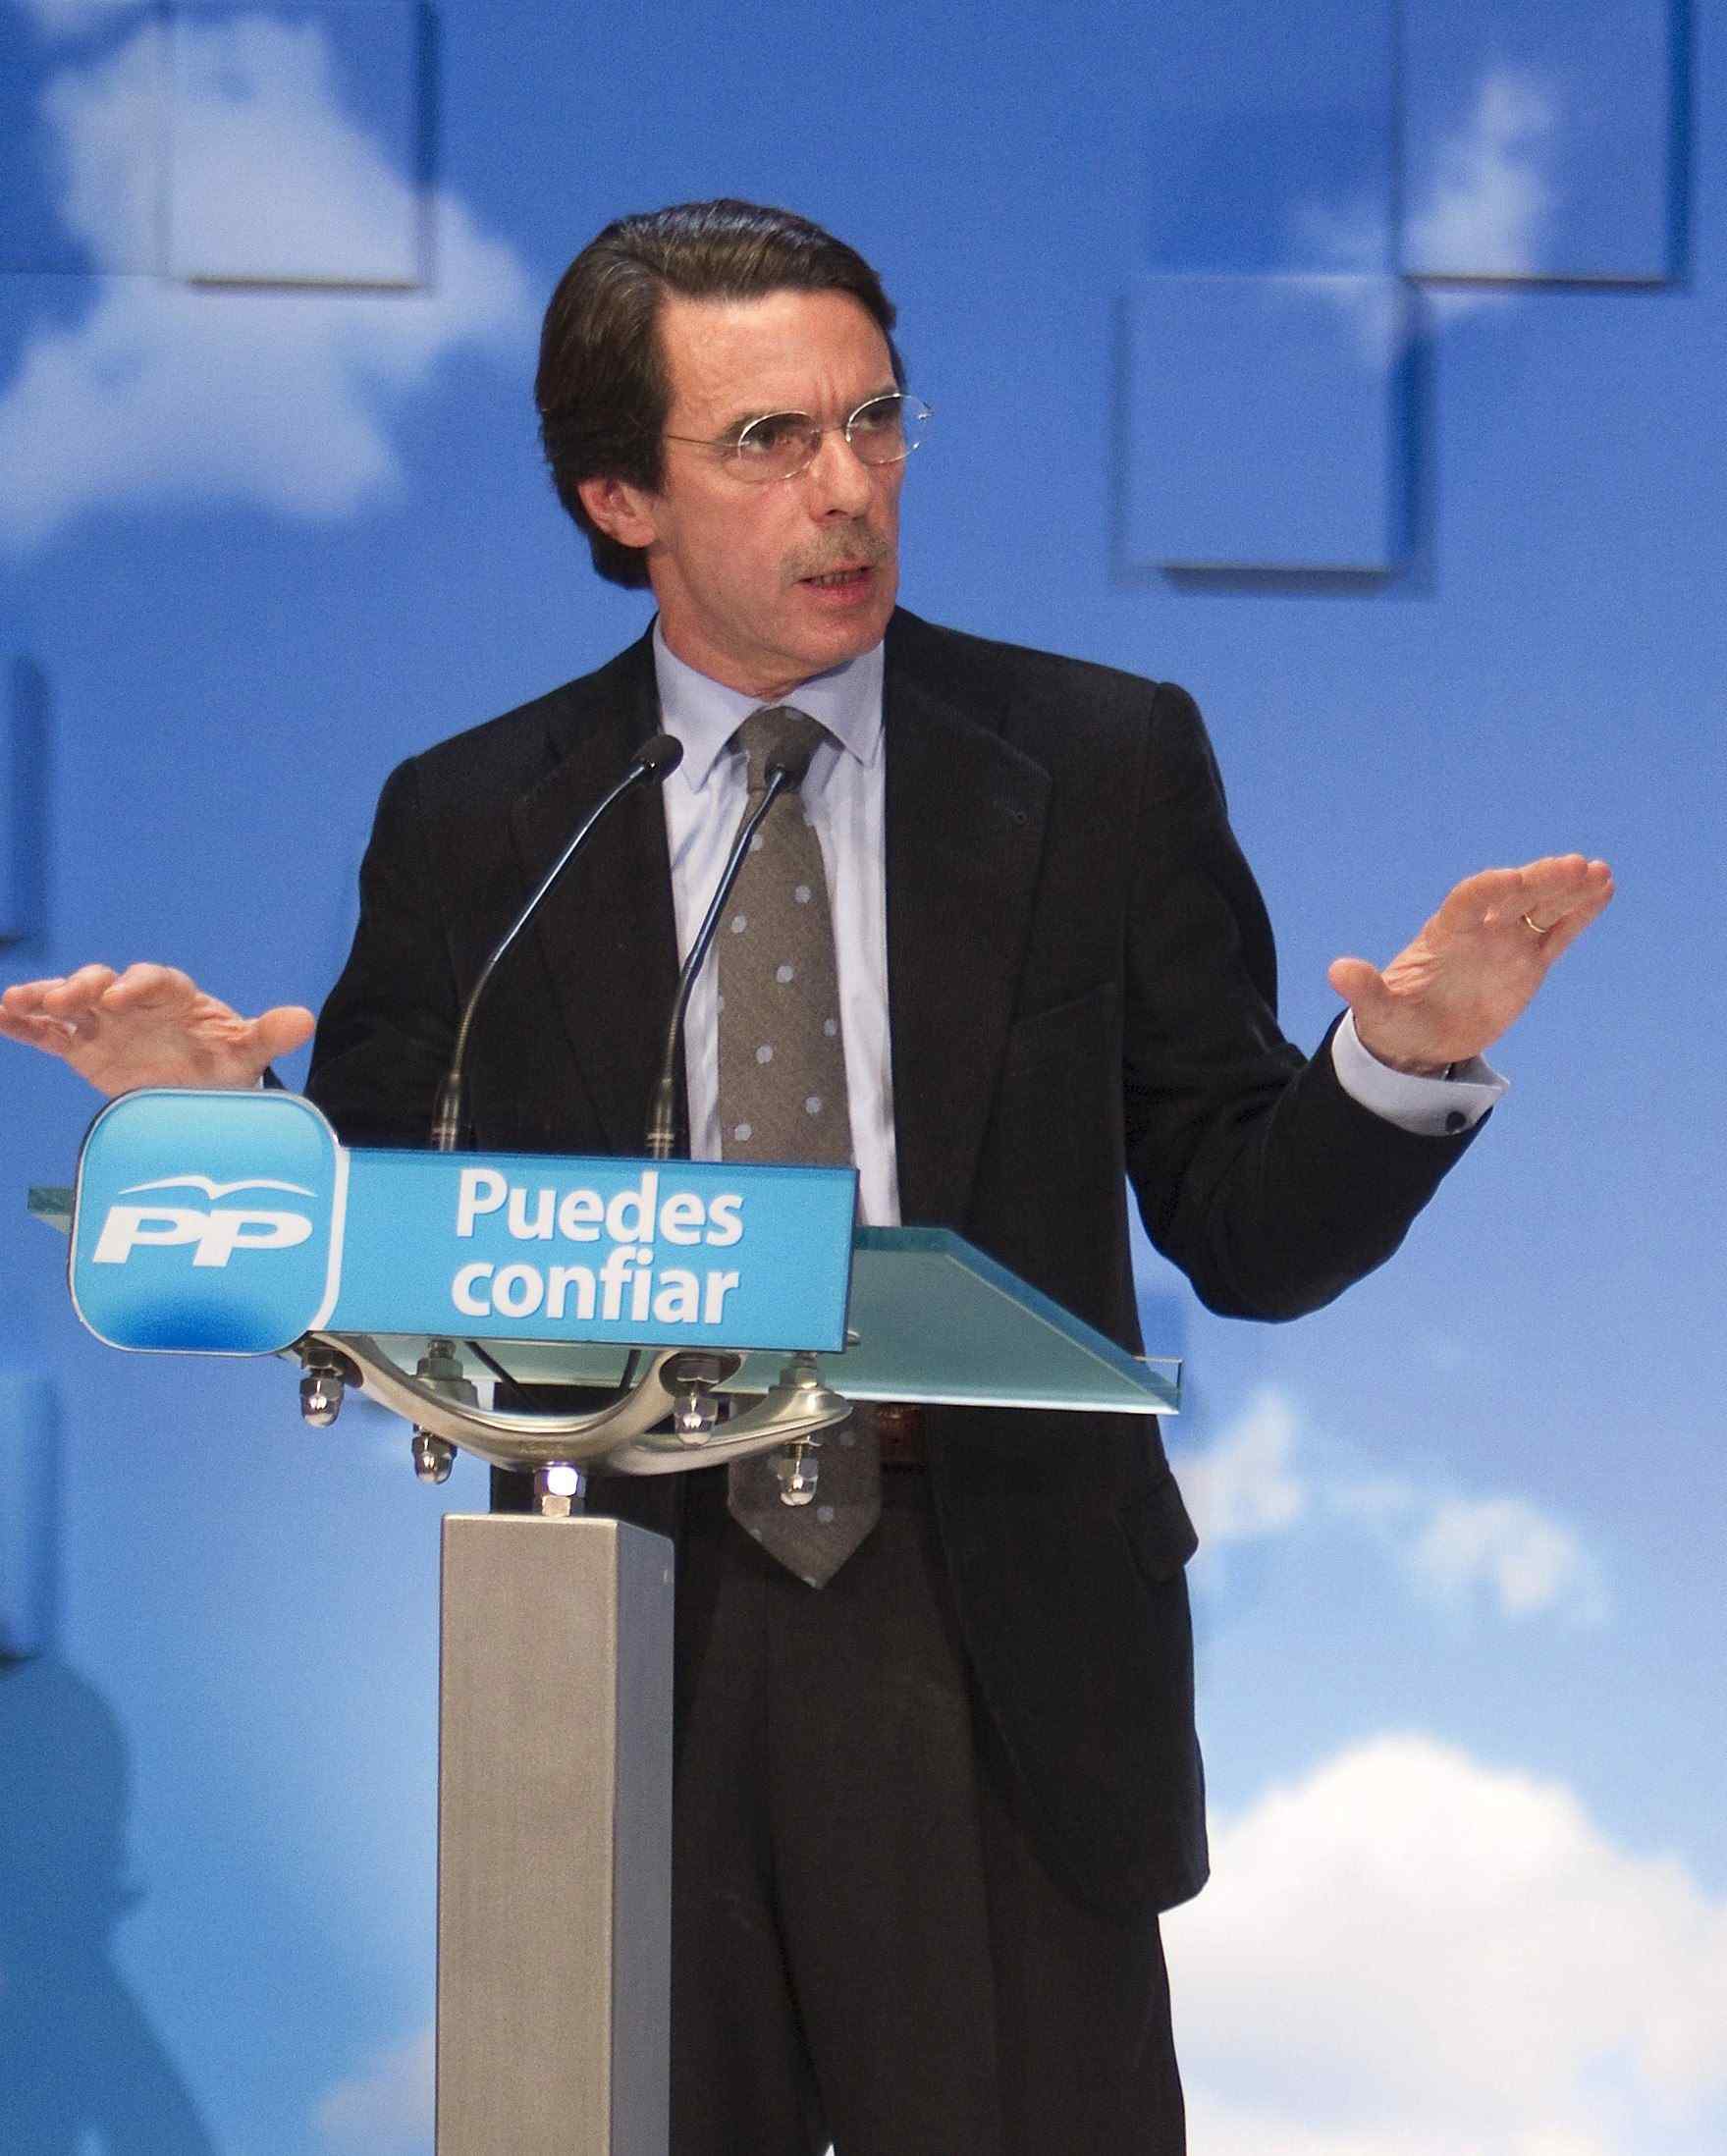 El PP deixa vacant la presidència d'honor després del divorci d'Aznar